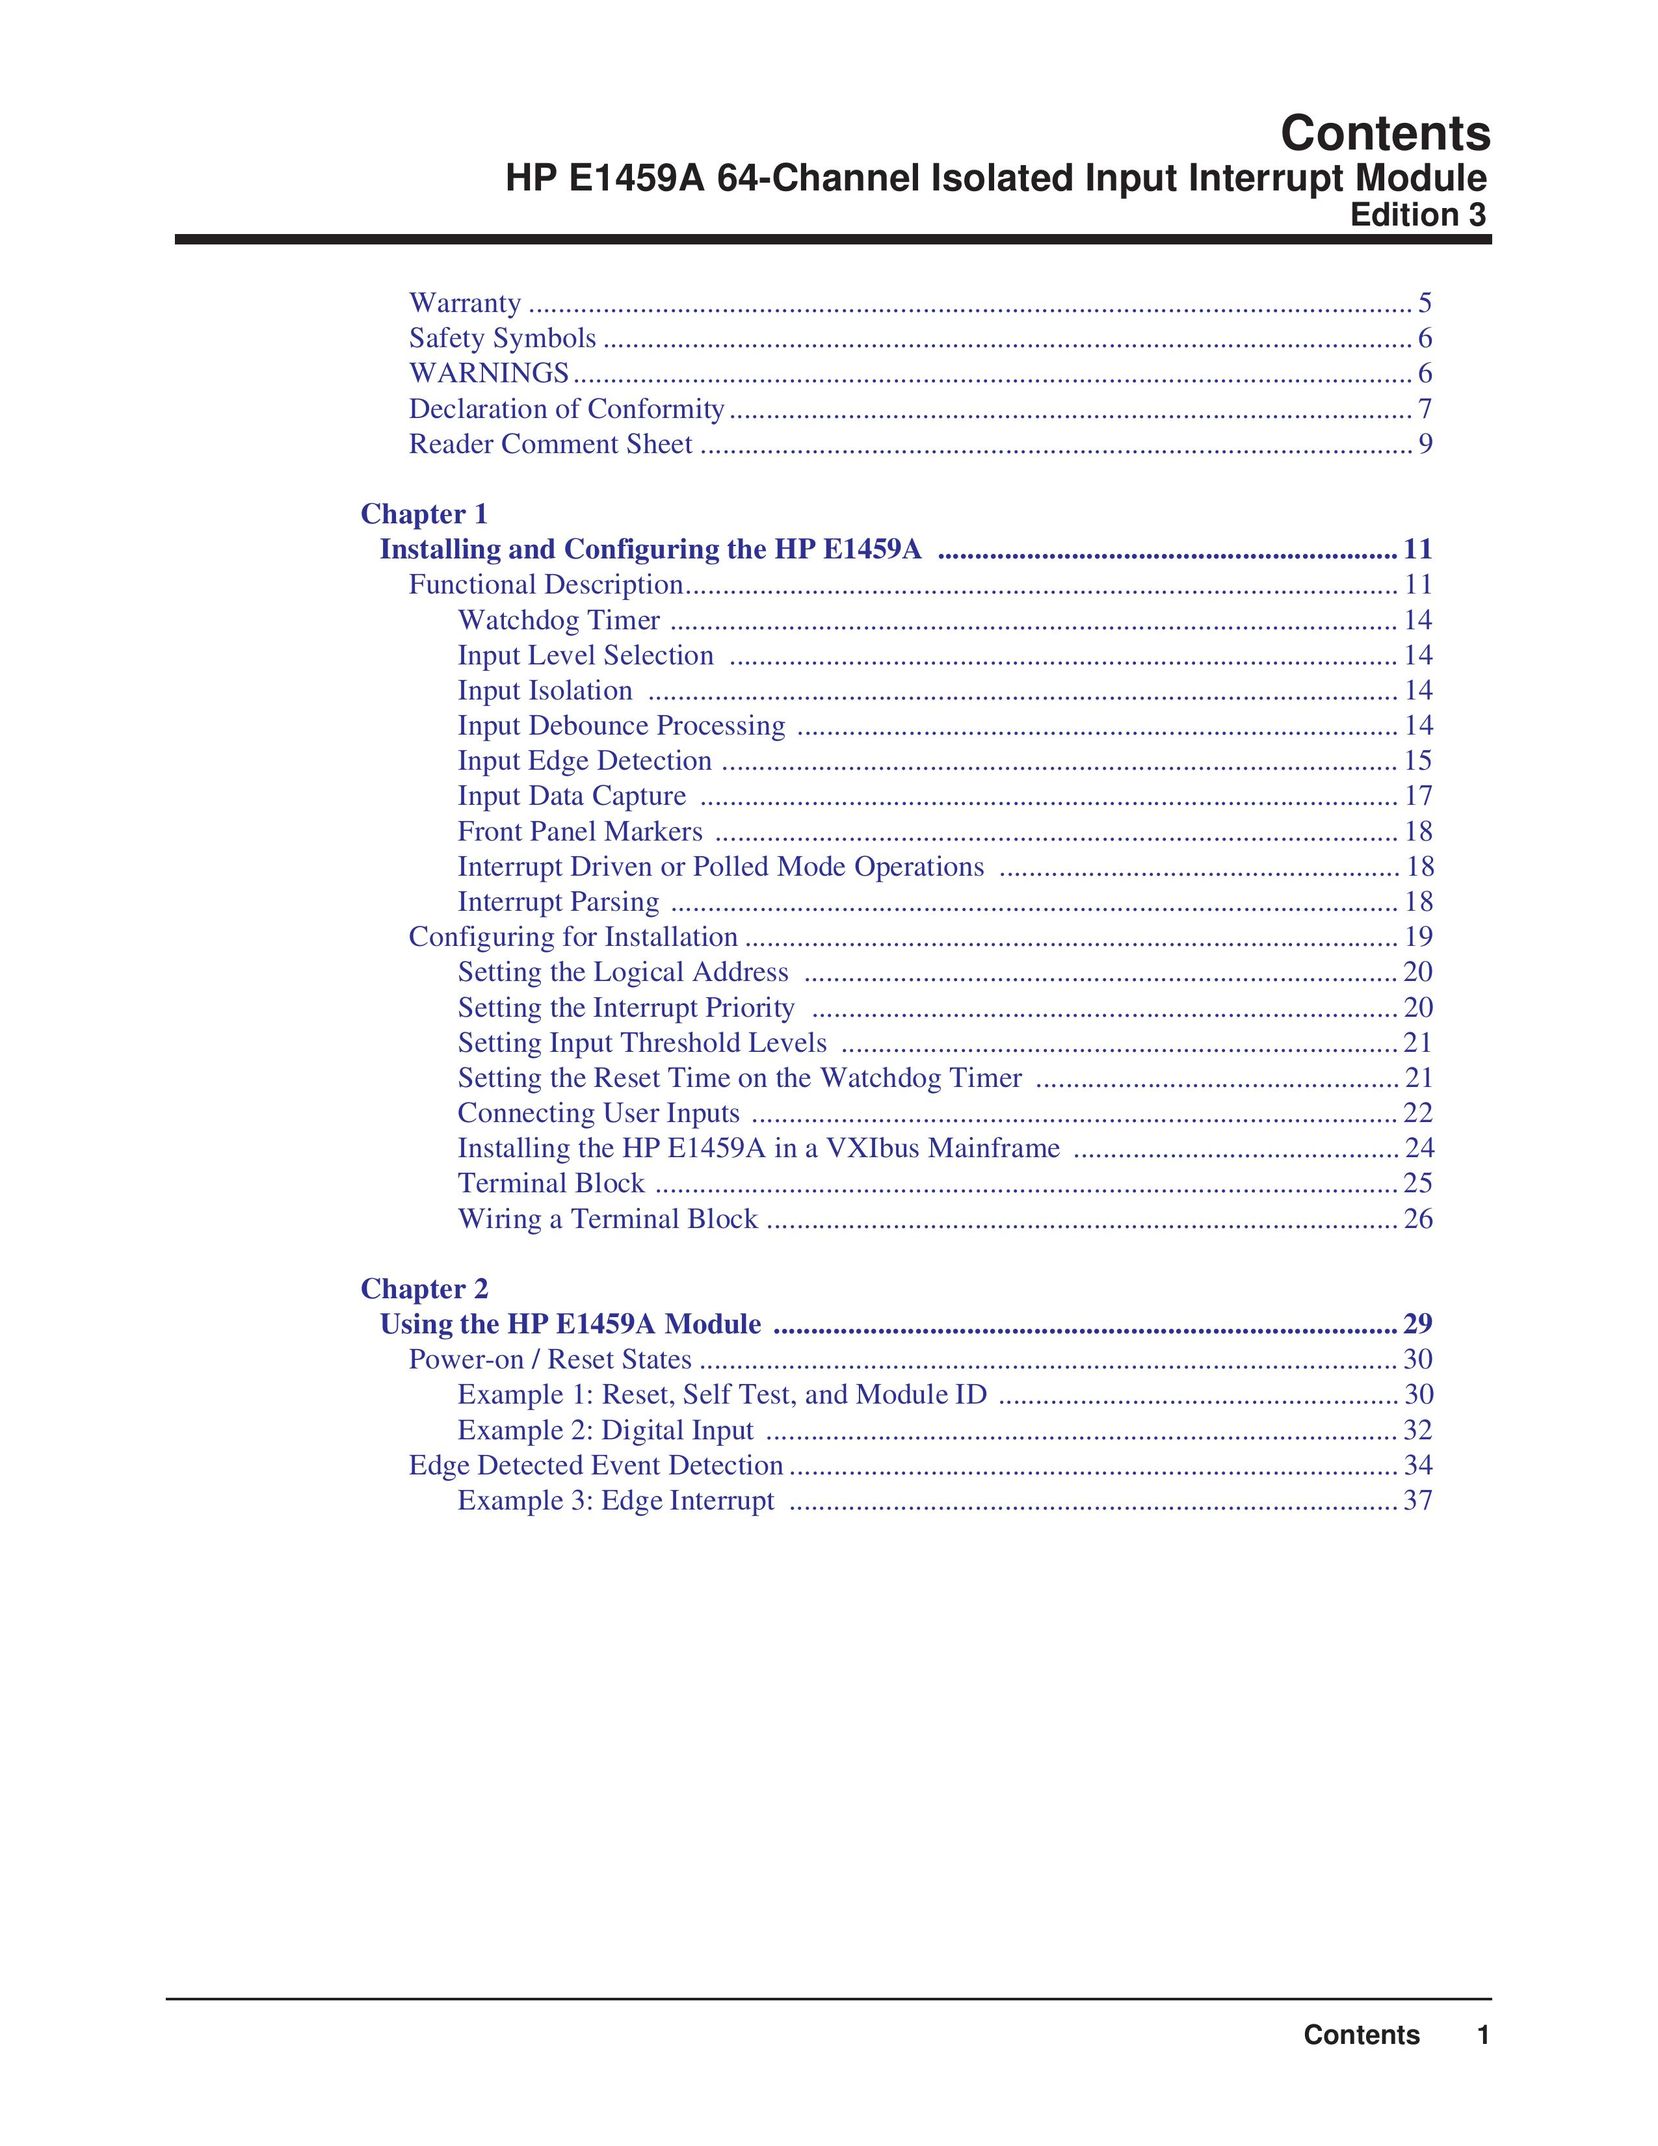 HP (Hewlett-Packard) E1459A Network Router User Manual